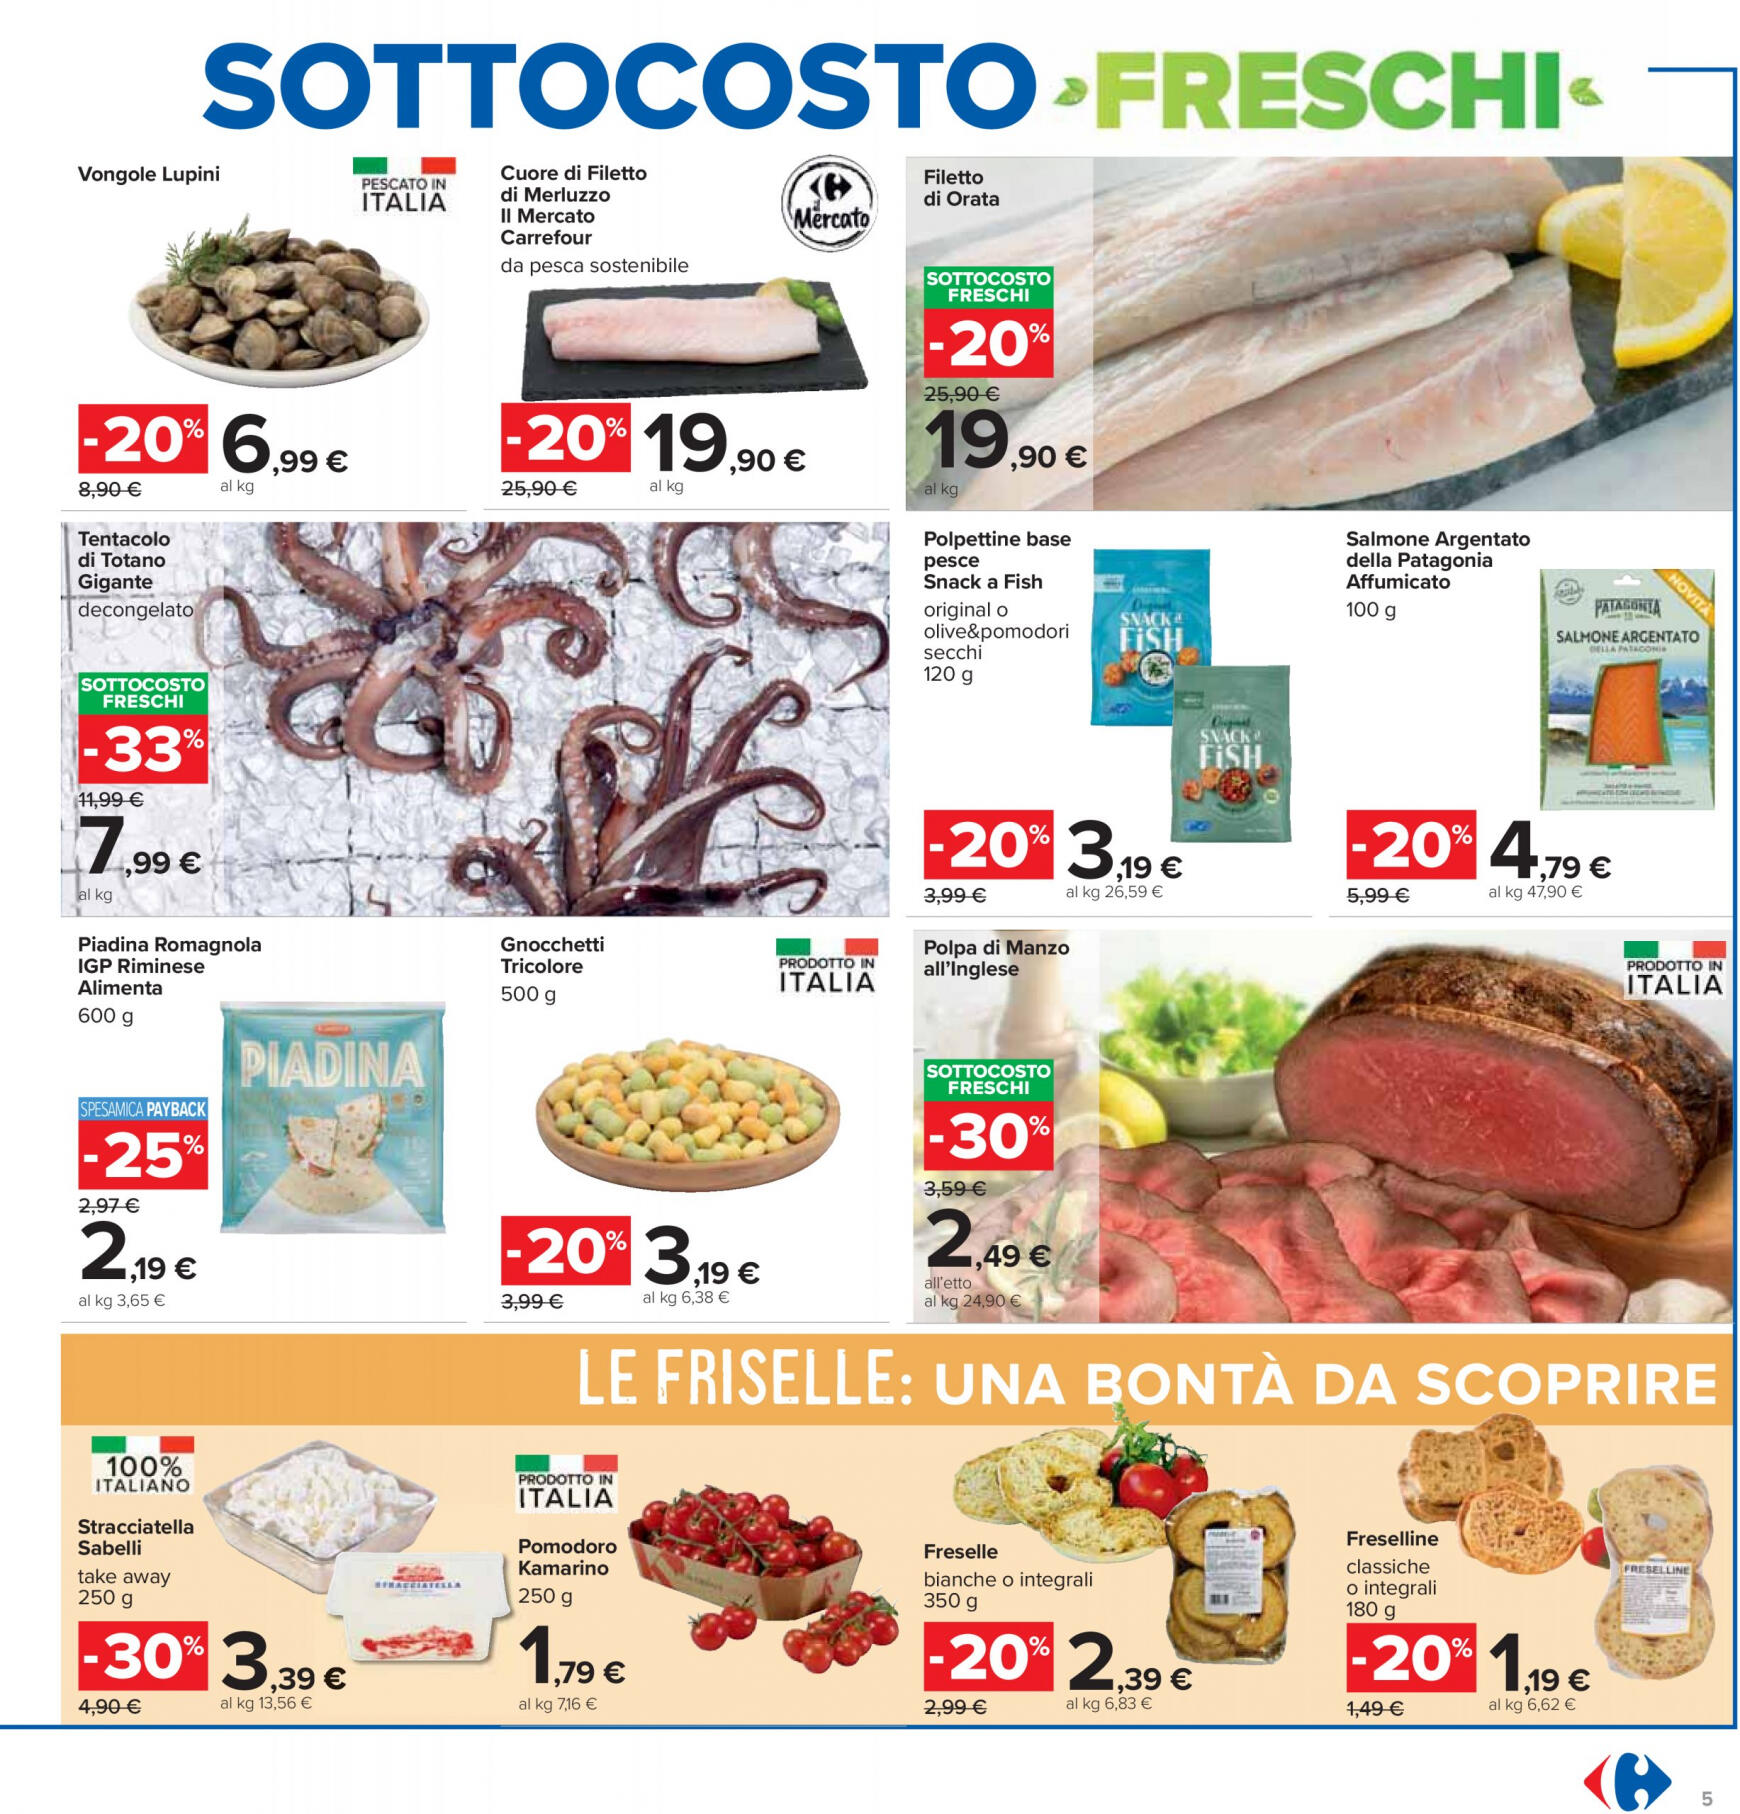 carrefour - Nuovo volantino Carrefour - Sottocosto Freschi 16.05. - 29.05. - page: 5